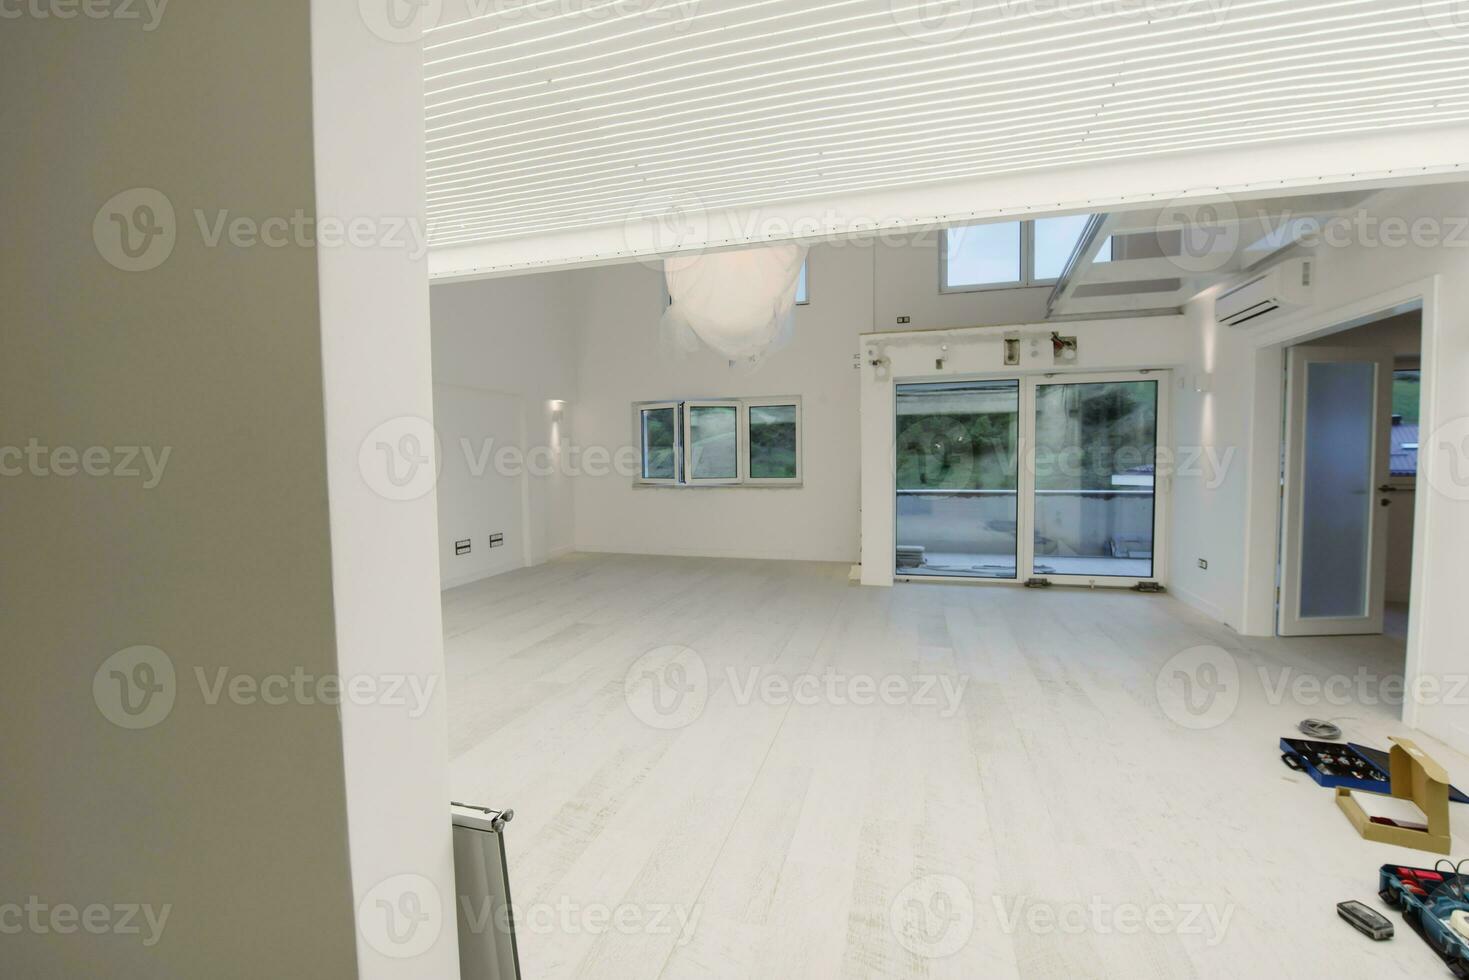 intérieur d'un appartement à deux niveaux à espace ouvert moderne et élégant vide photo